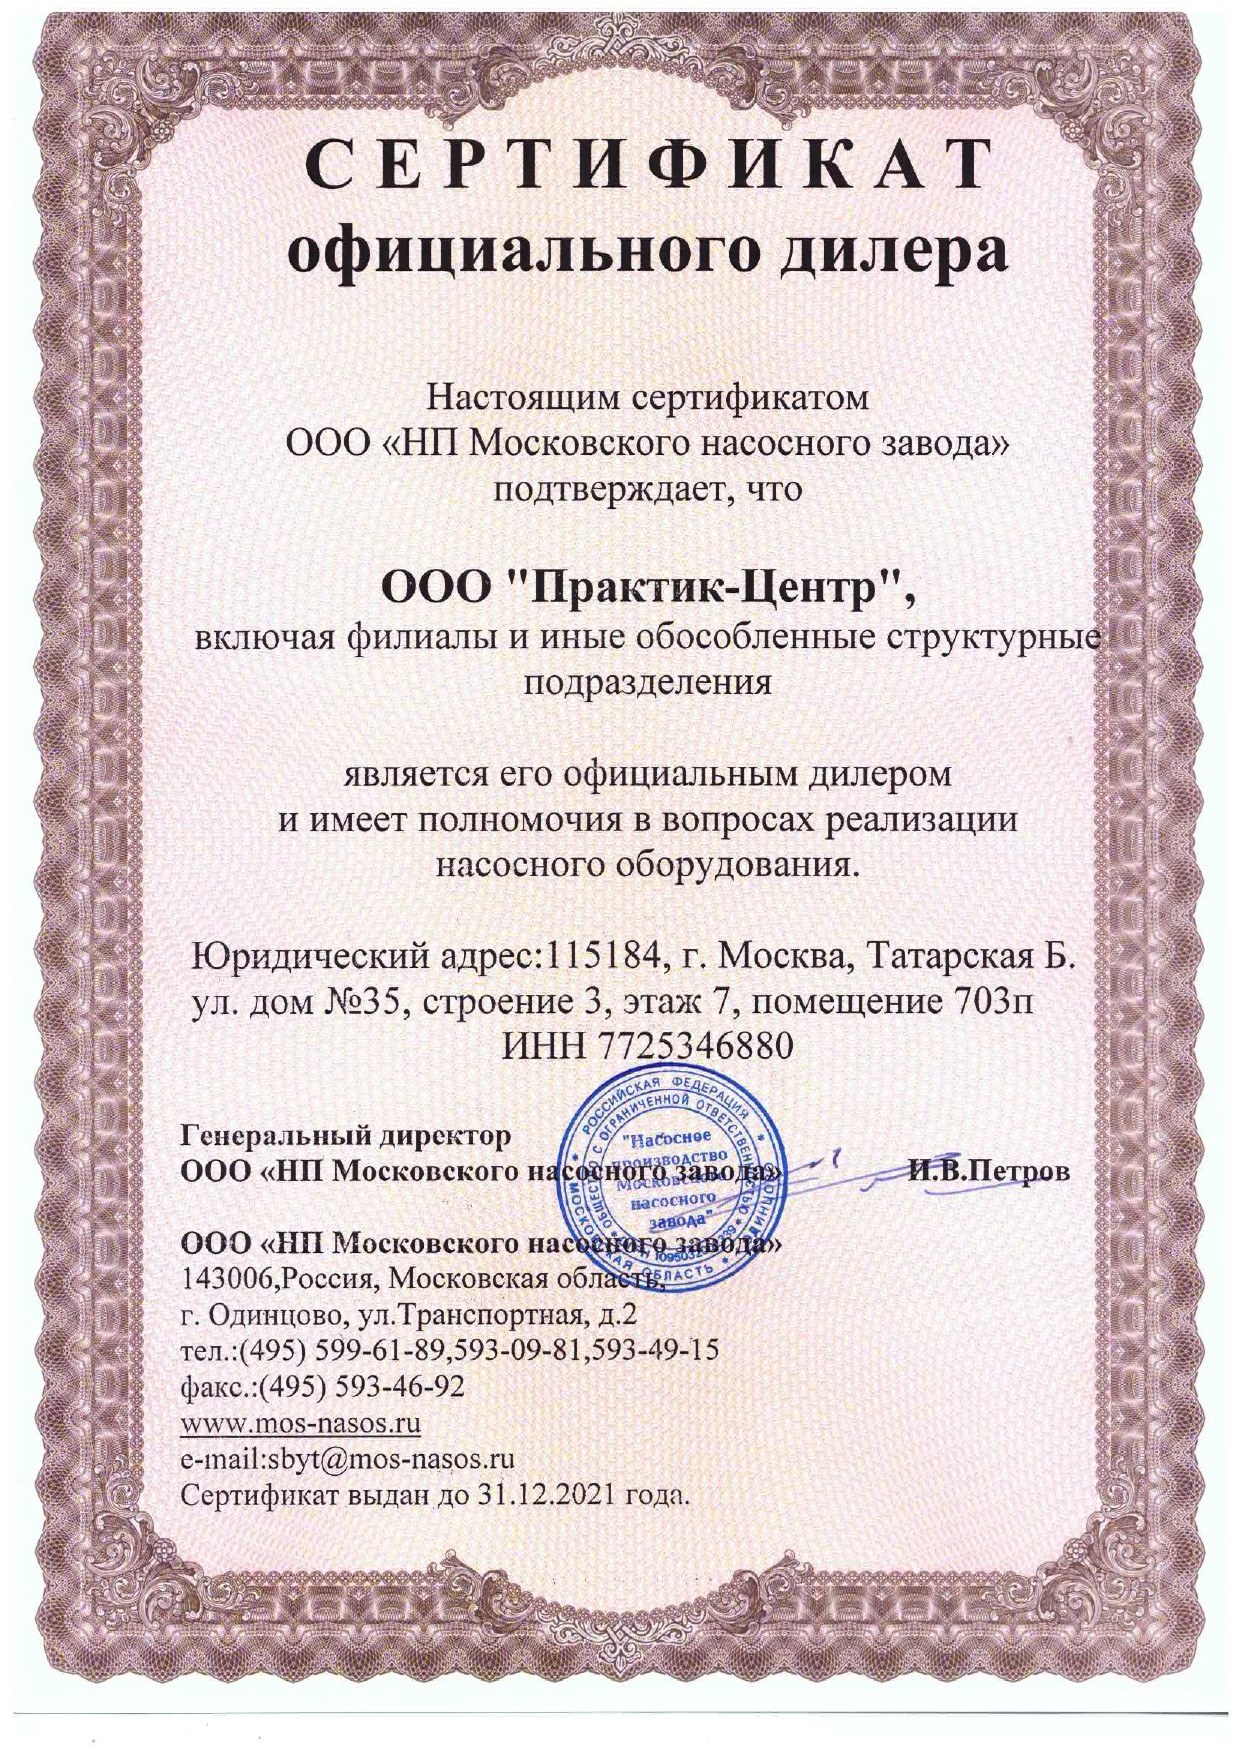 Сертификат Дилера "НП Московского насосного завода"